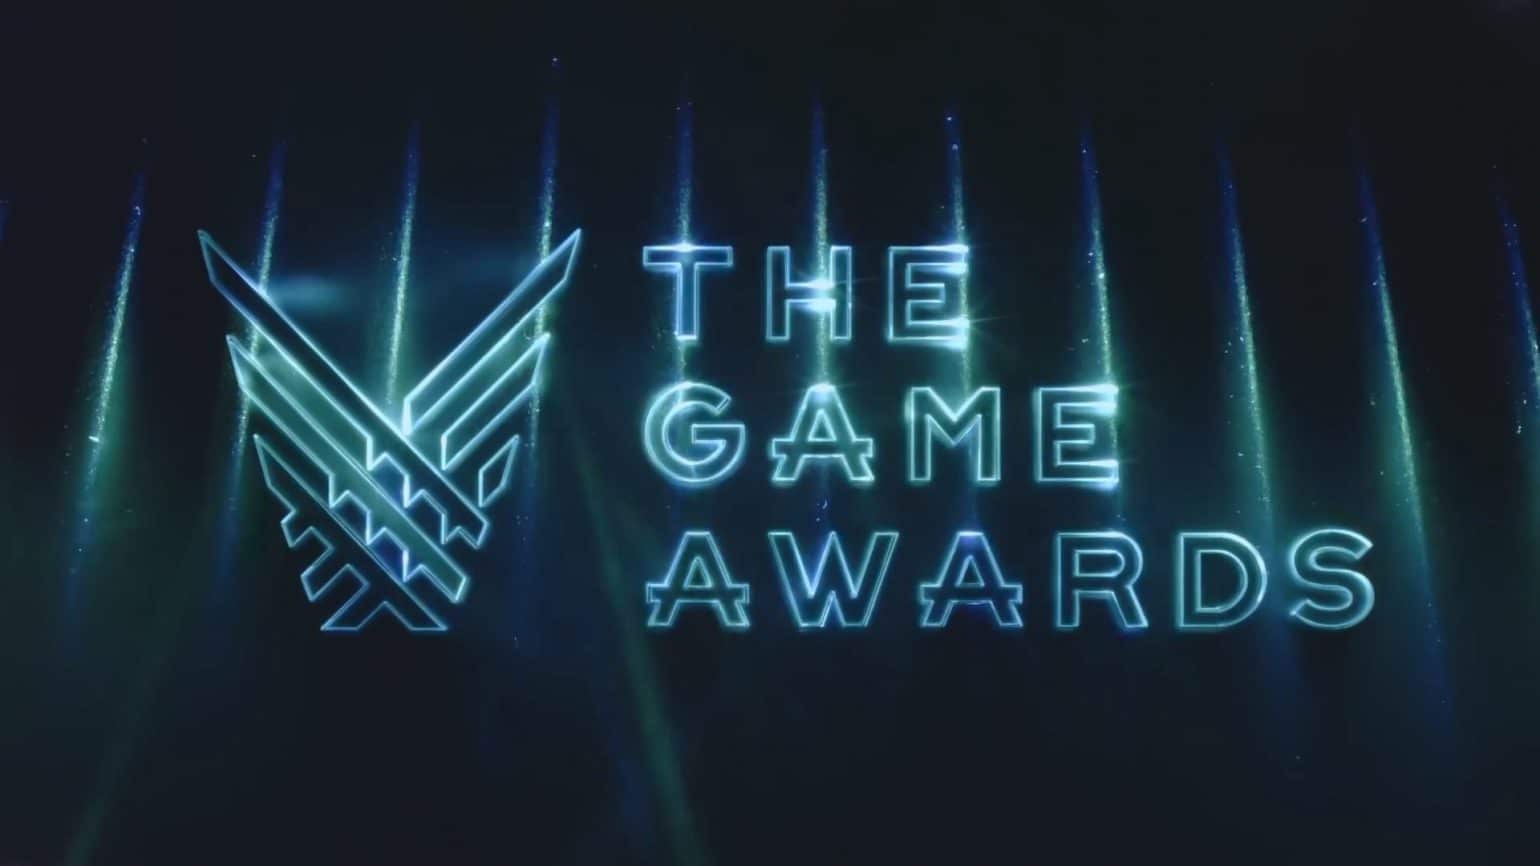 Game Awards 2018